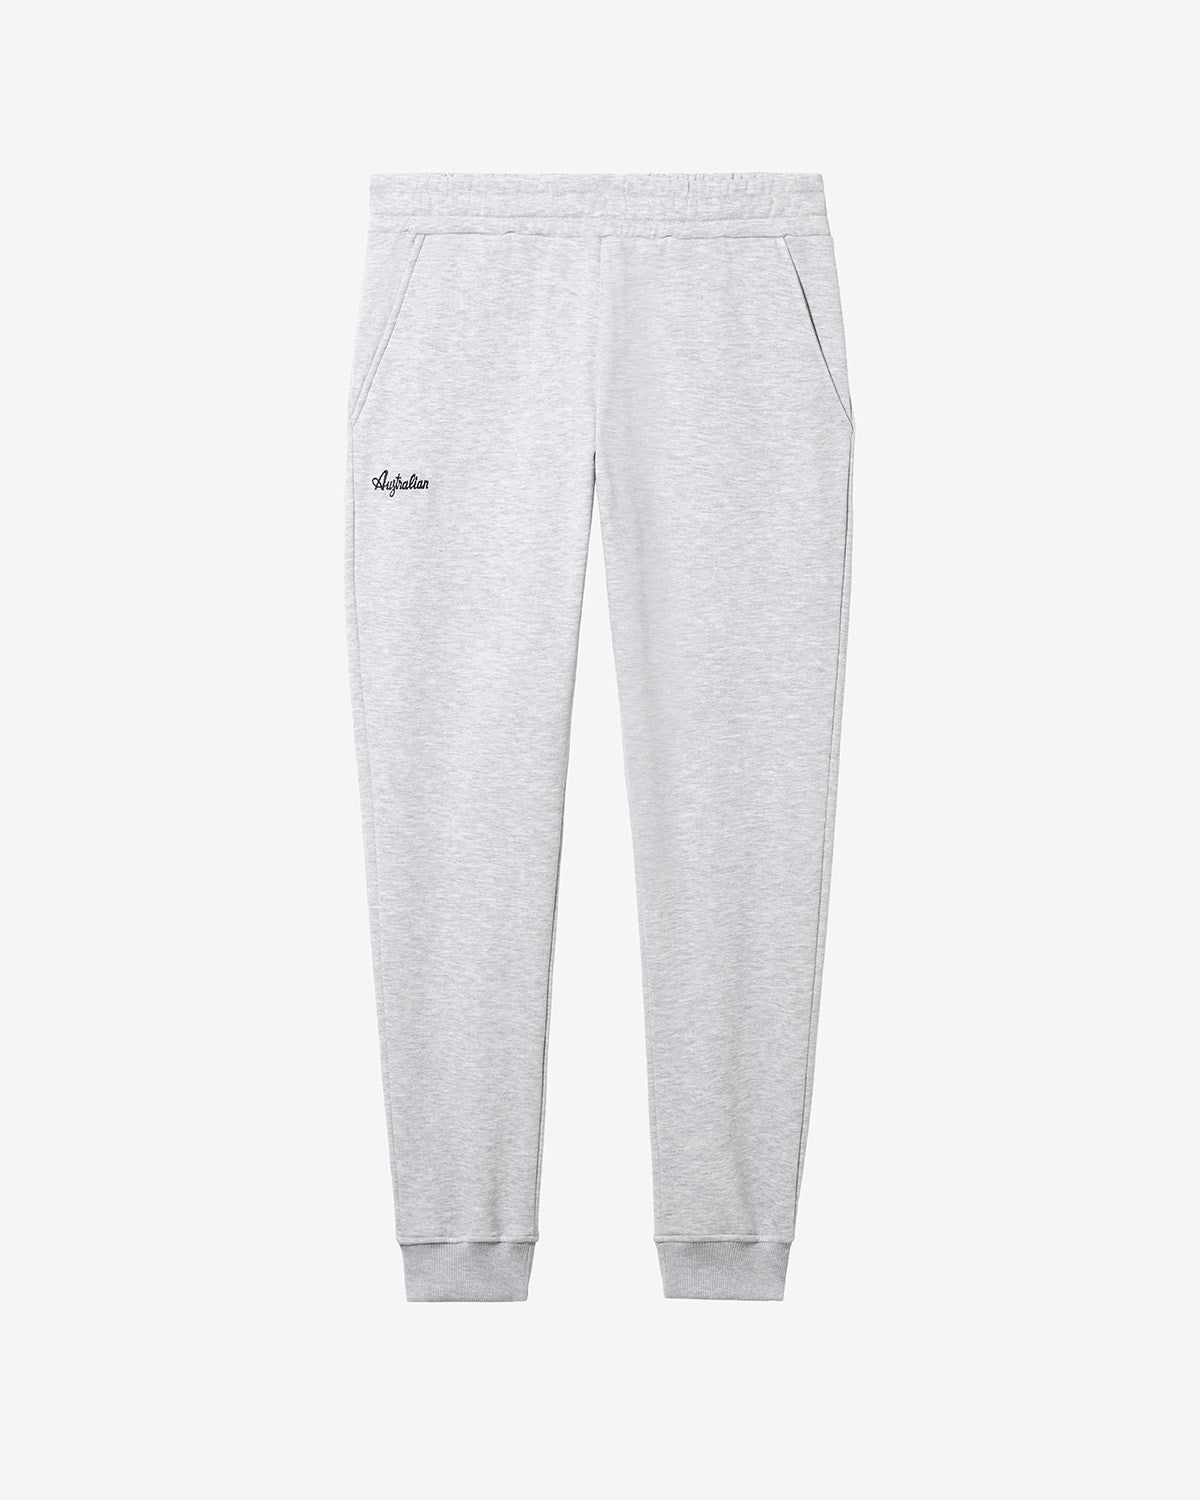 Basic Fleece Pant: Australian Sportswear